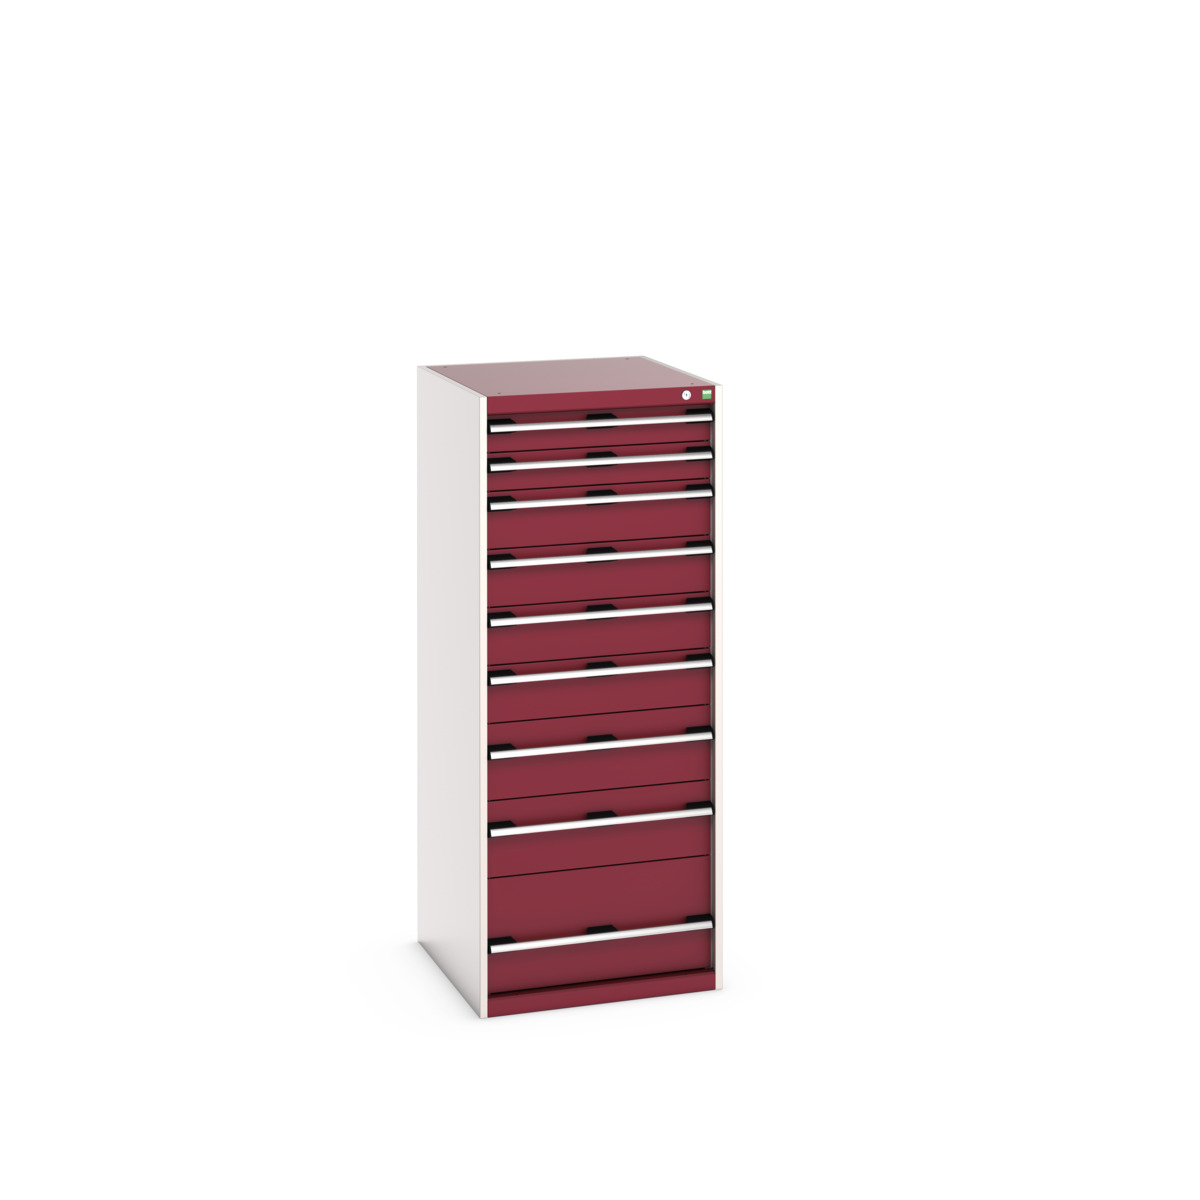 40027045.24V - cubio drawer cabinet